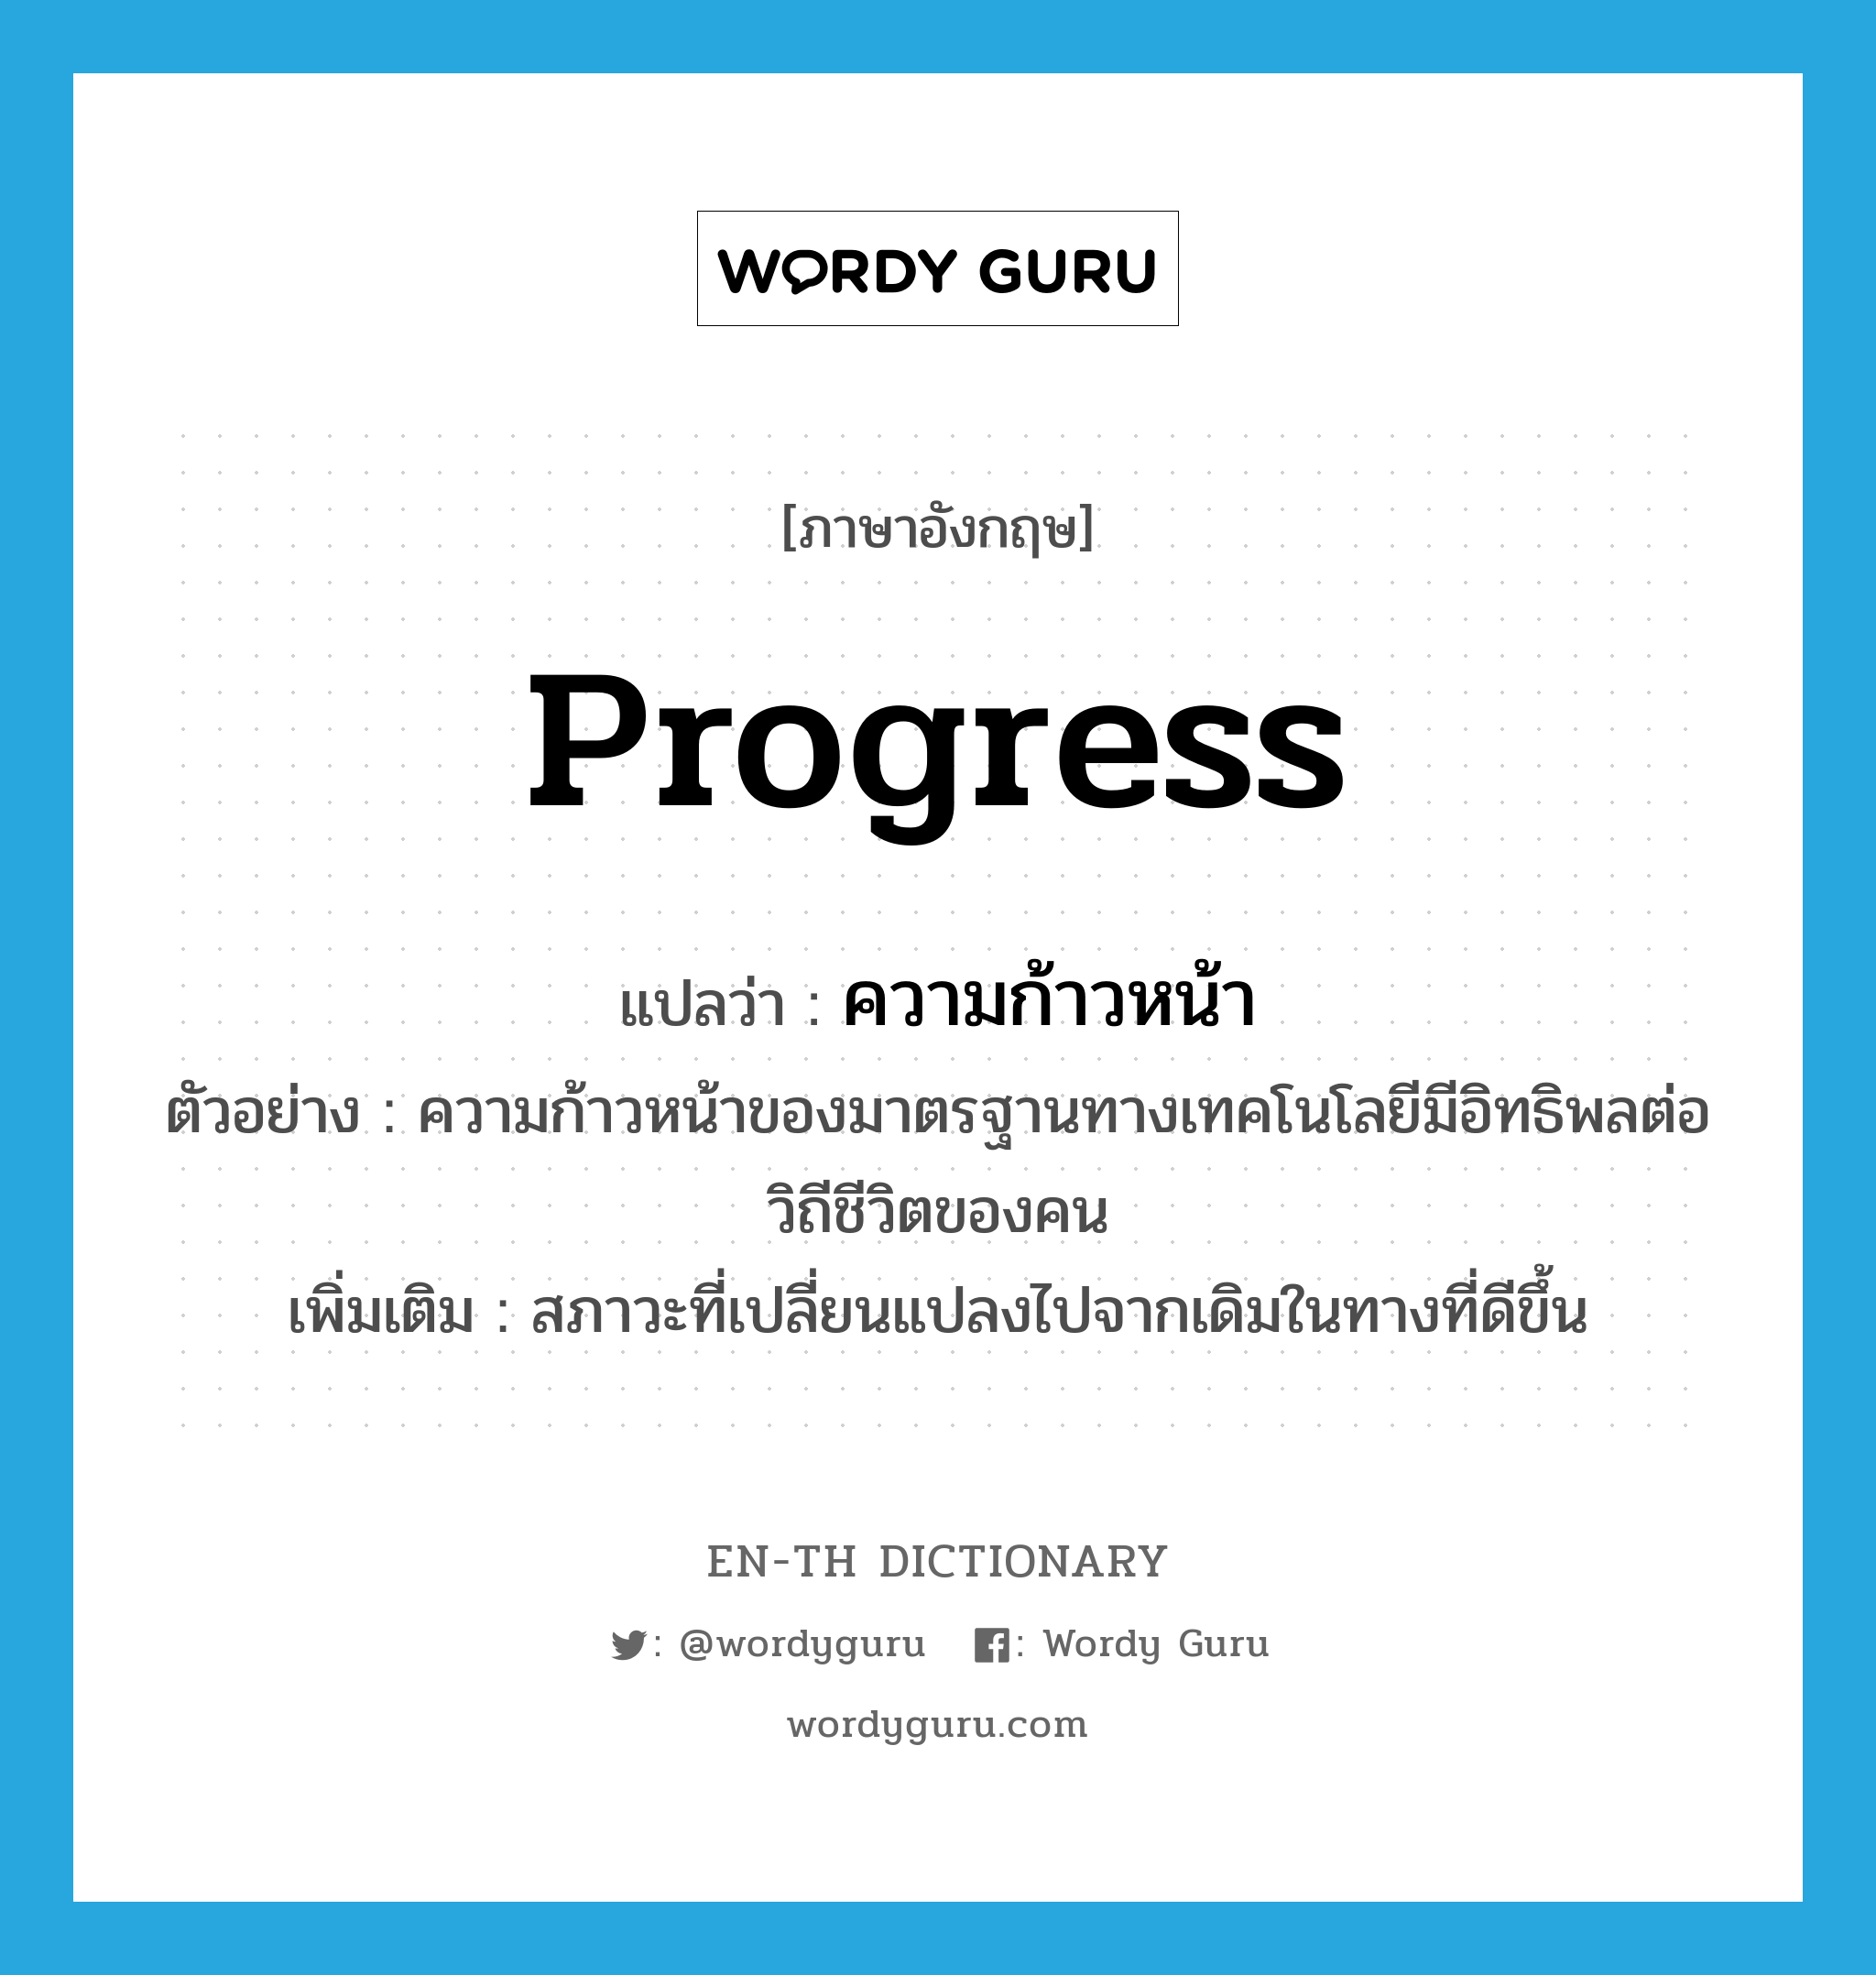 progress แปลว่า?, คำศัพท์ภาษาอังกฤษ progress แปลว่า ความก้าวหน้า ประเภท N ตัวอย่าง ความก้าวหน้าของมาตรฐานทางเทคโนโลยีมีอิทธิพลต่อวิถีชีวิตของคน เพิ่มเติม สภาวะที่เปลี่ยนแปลงไปจากเดิมในทางที่ดีขึ้น หมวด N